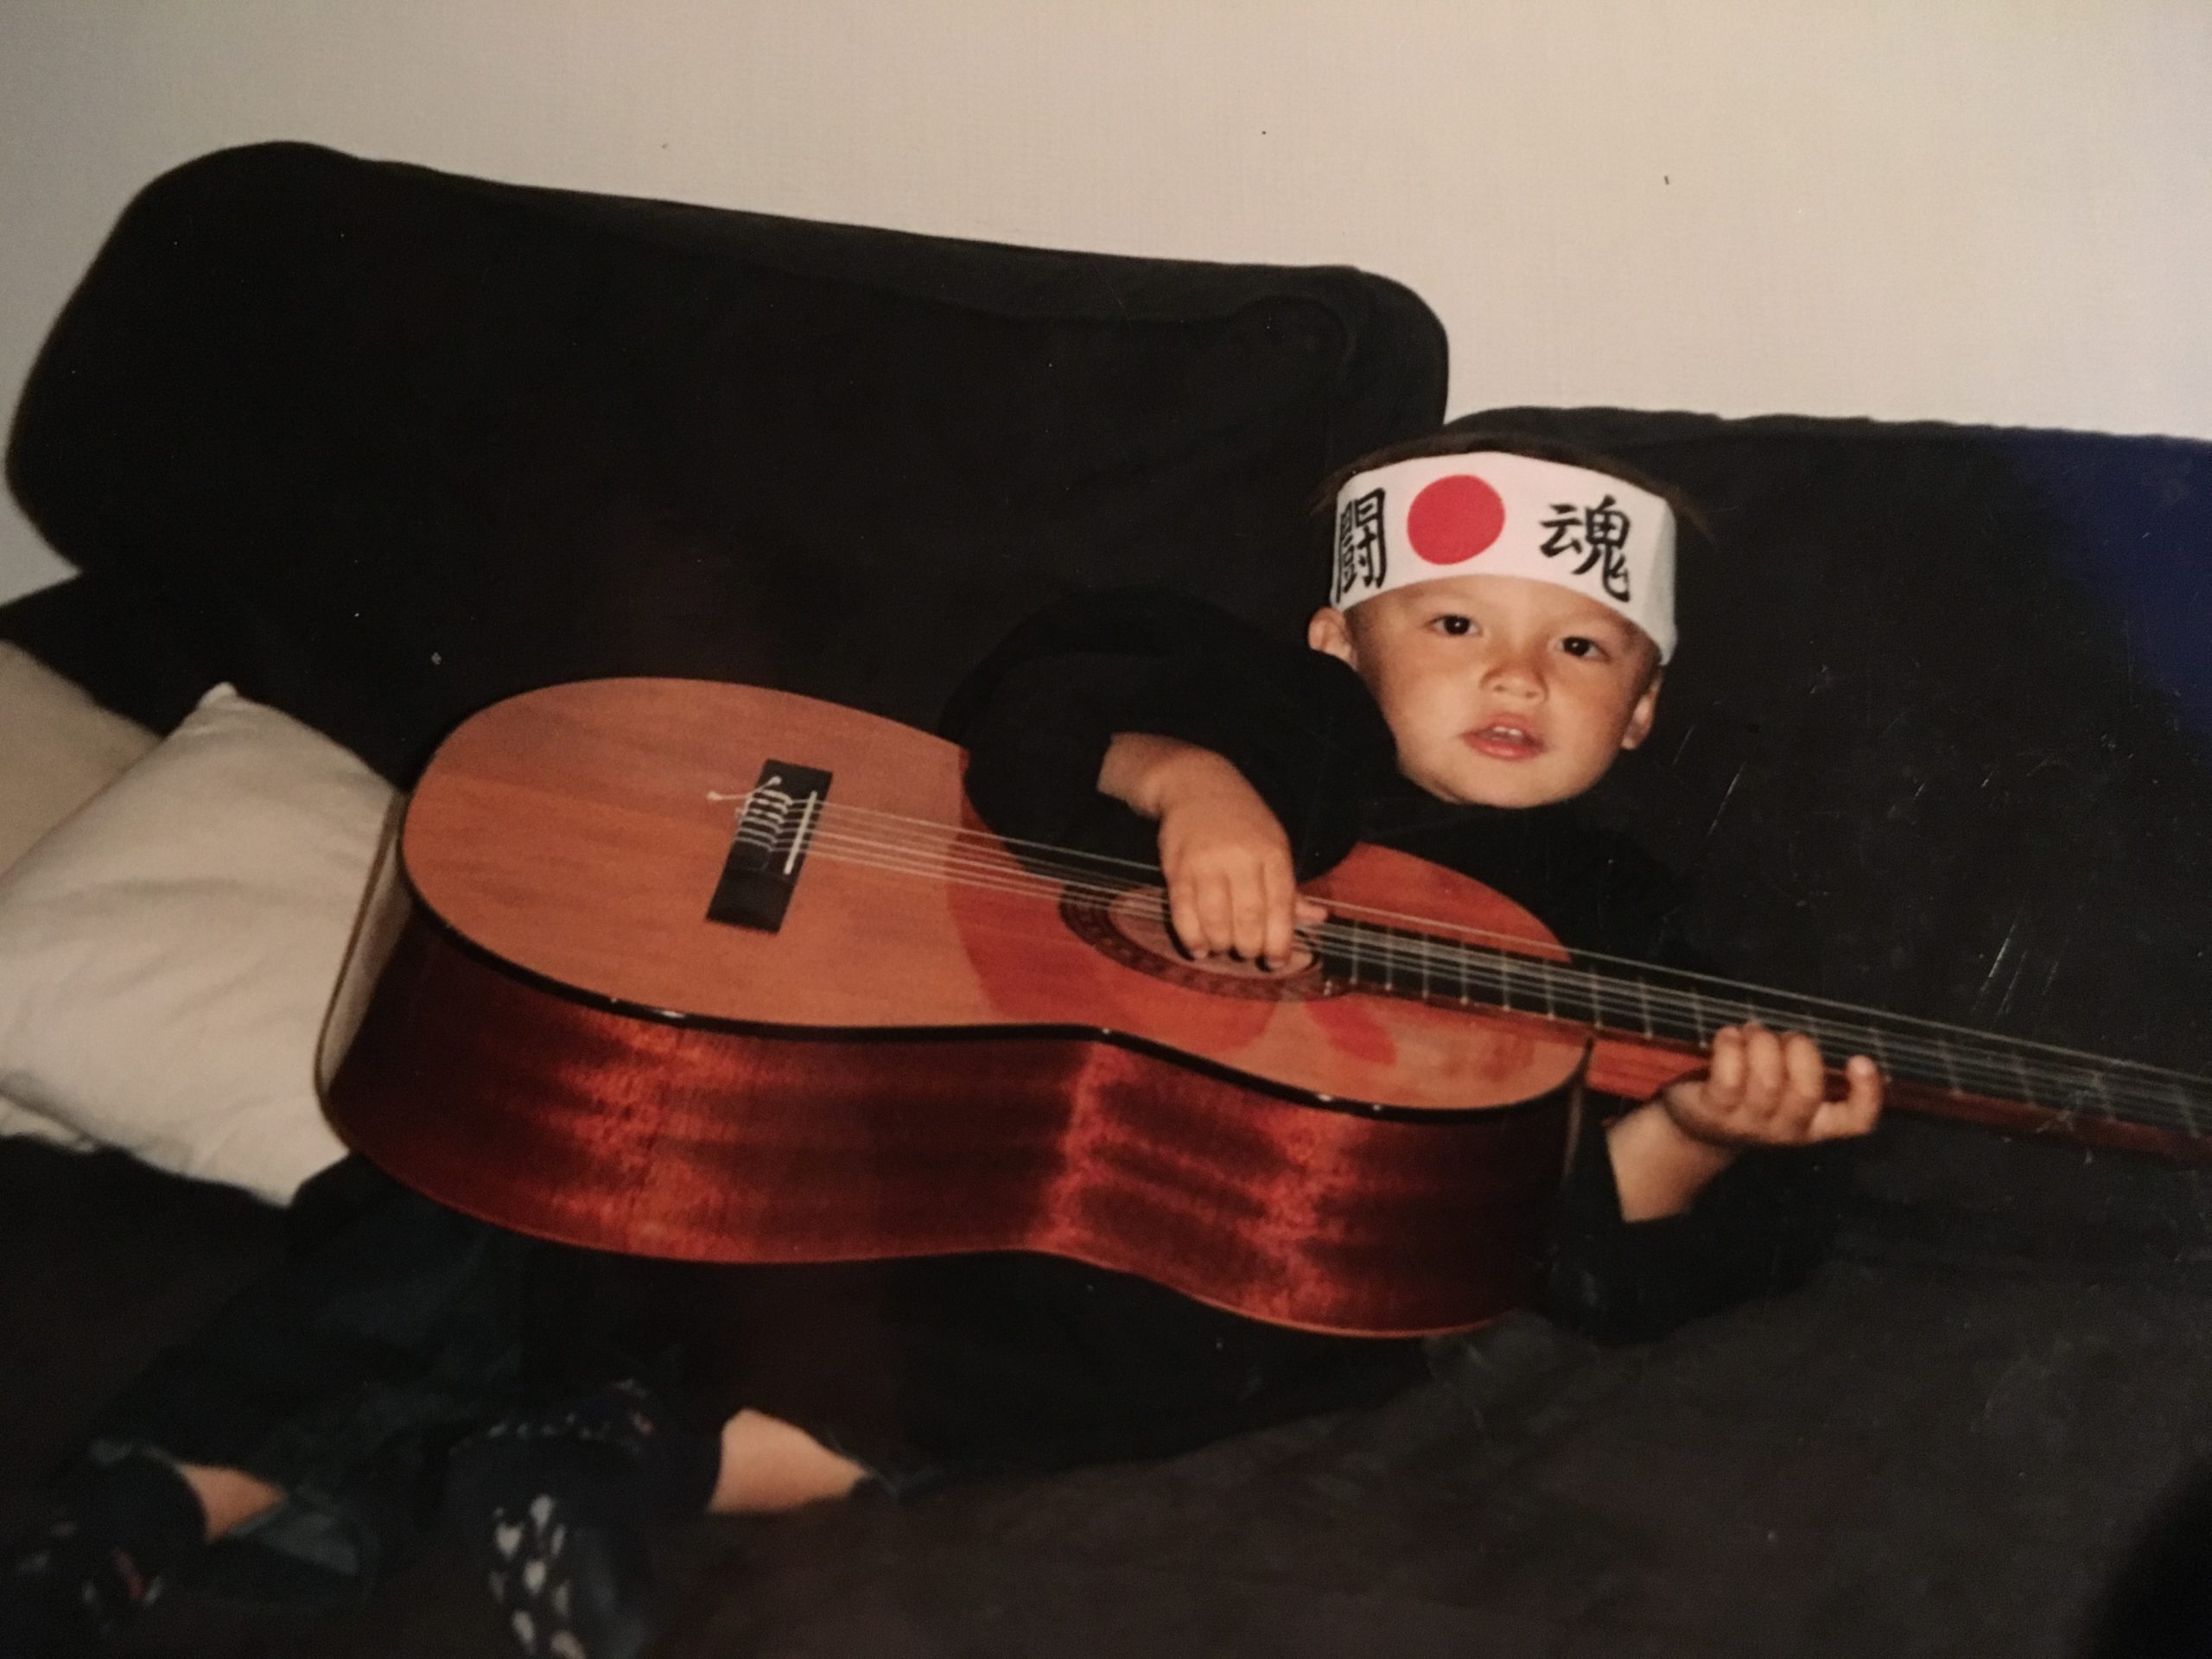 Noah er rundt 5 år gammel. Han ligger i sofaen, med en stor gitar som nesten dekker hele kroppen hans. Han har et panneband med kinesiske tegn på hodet.